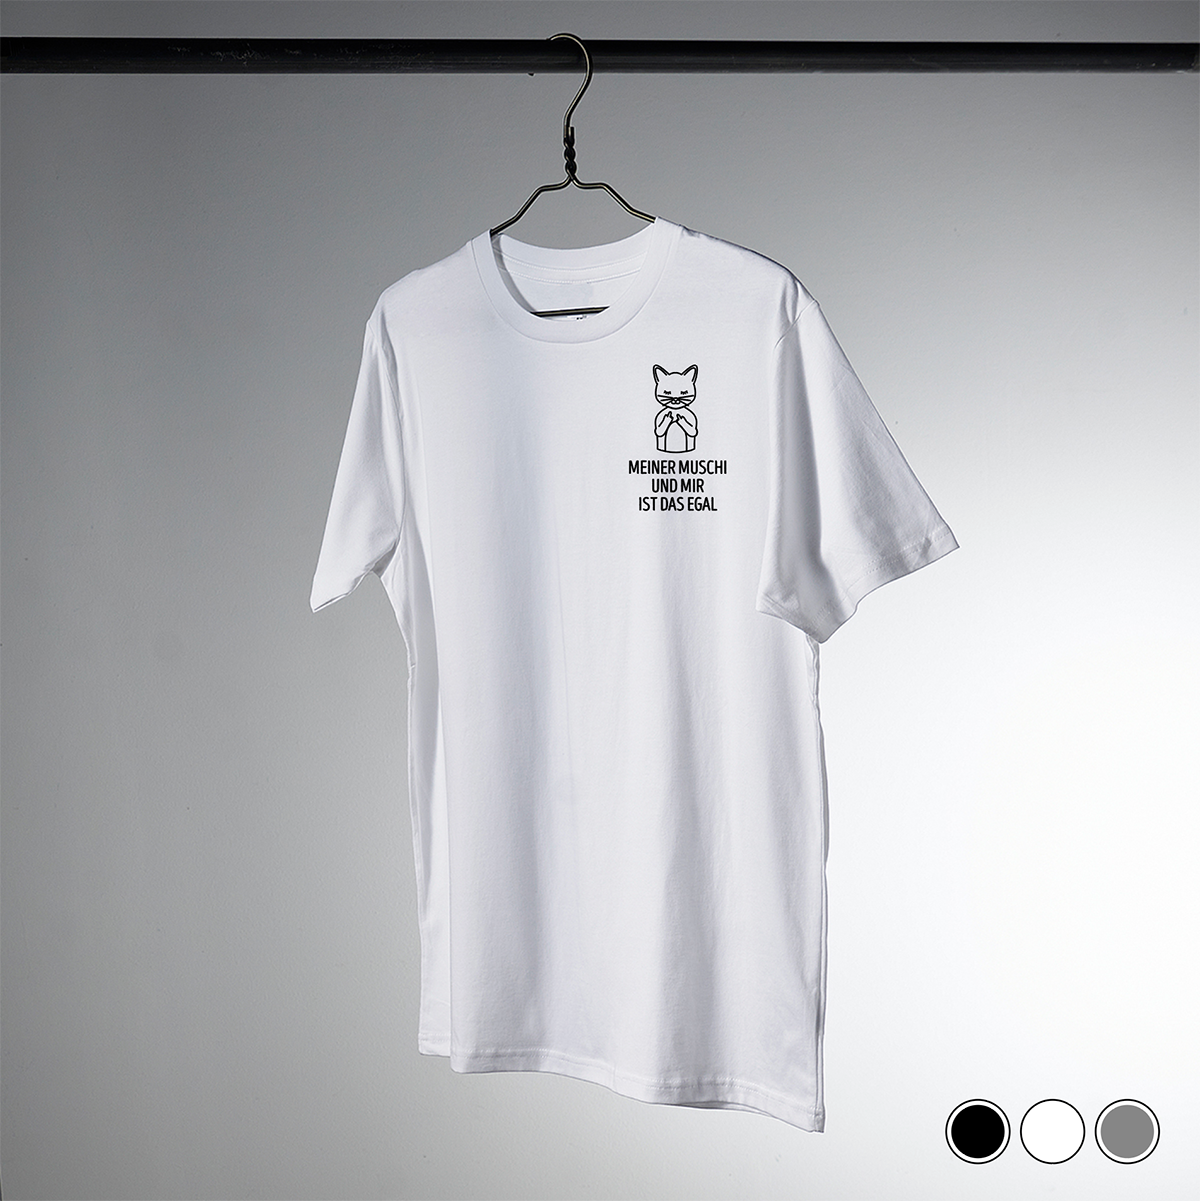 Unisex T-Shirt: „Meiner Muschi und mir ist das egal“